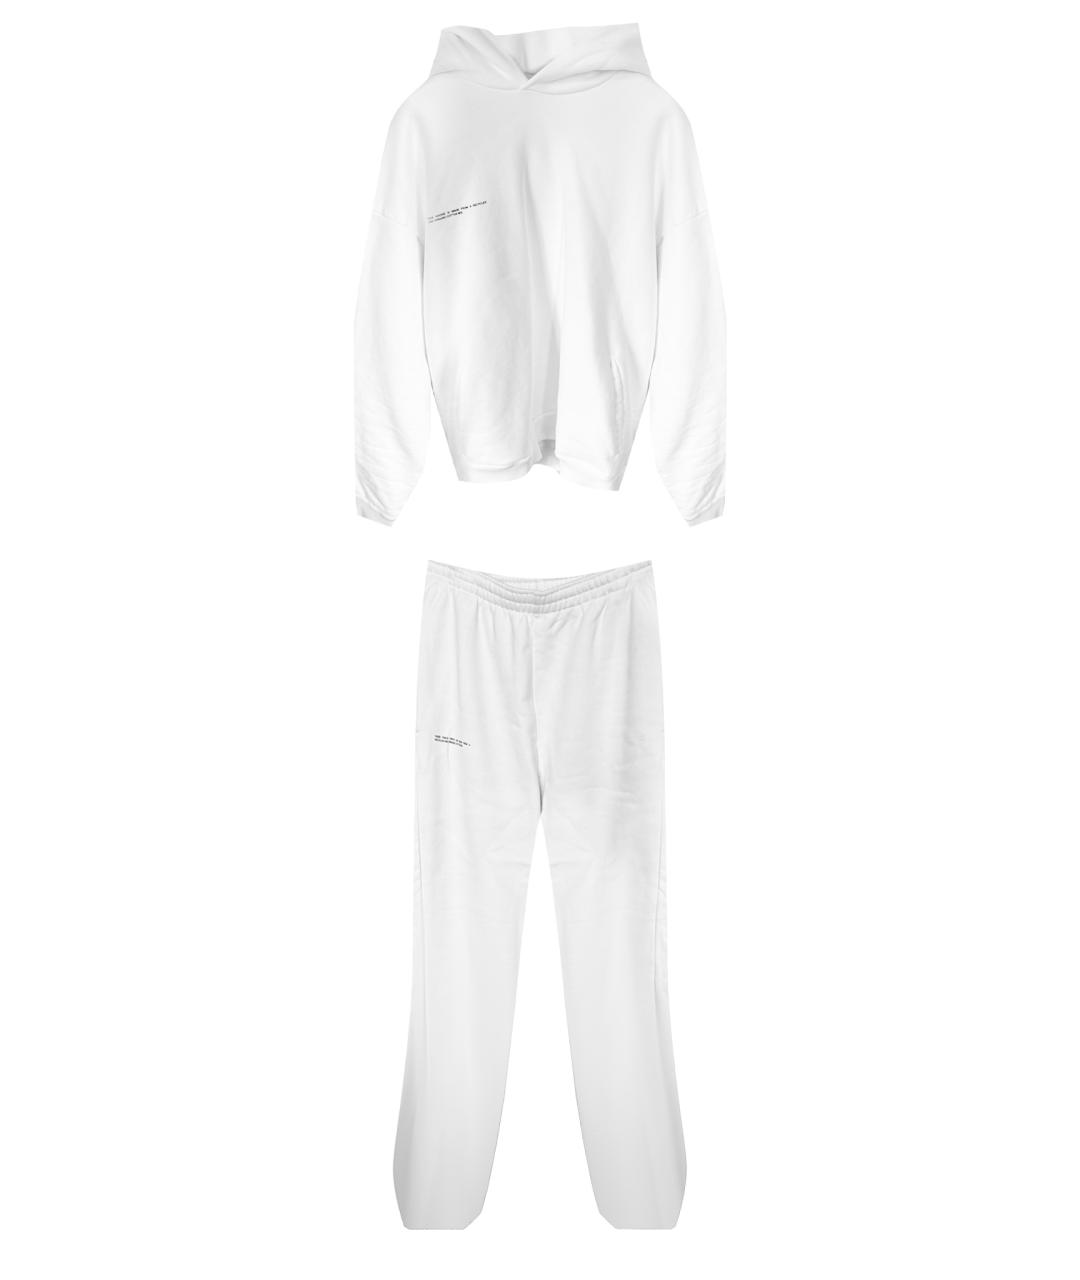 THE PANGAIA Белый хлопковый спортивный костюм, фото 1